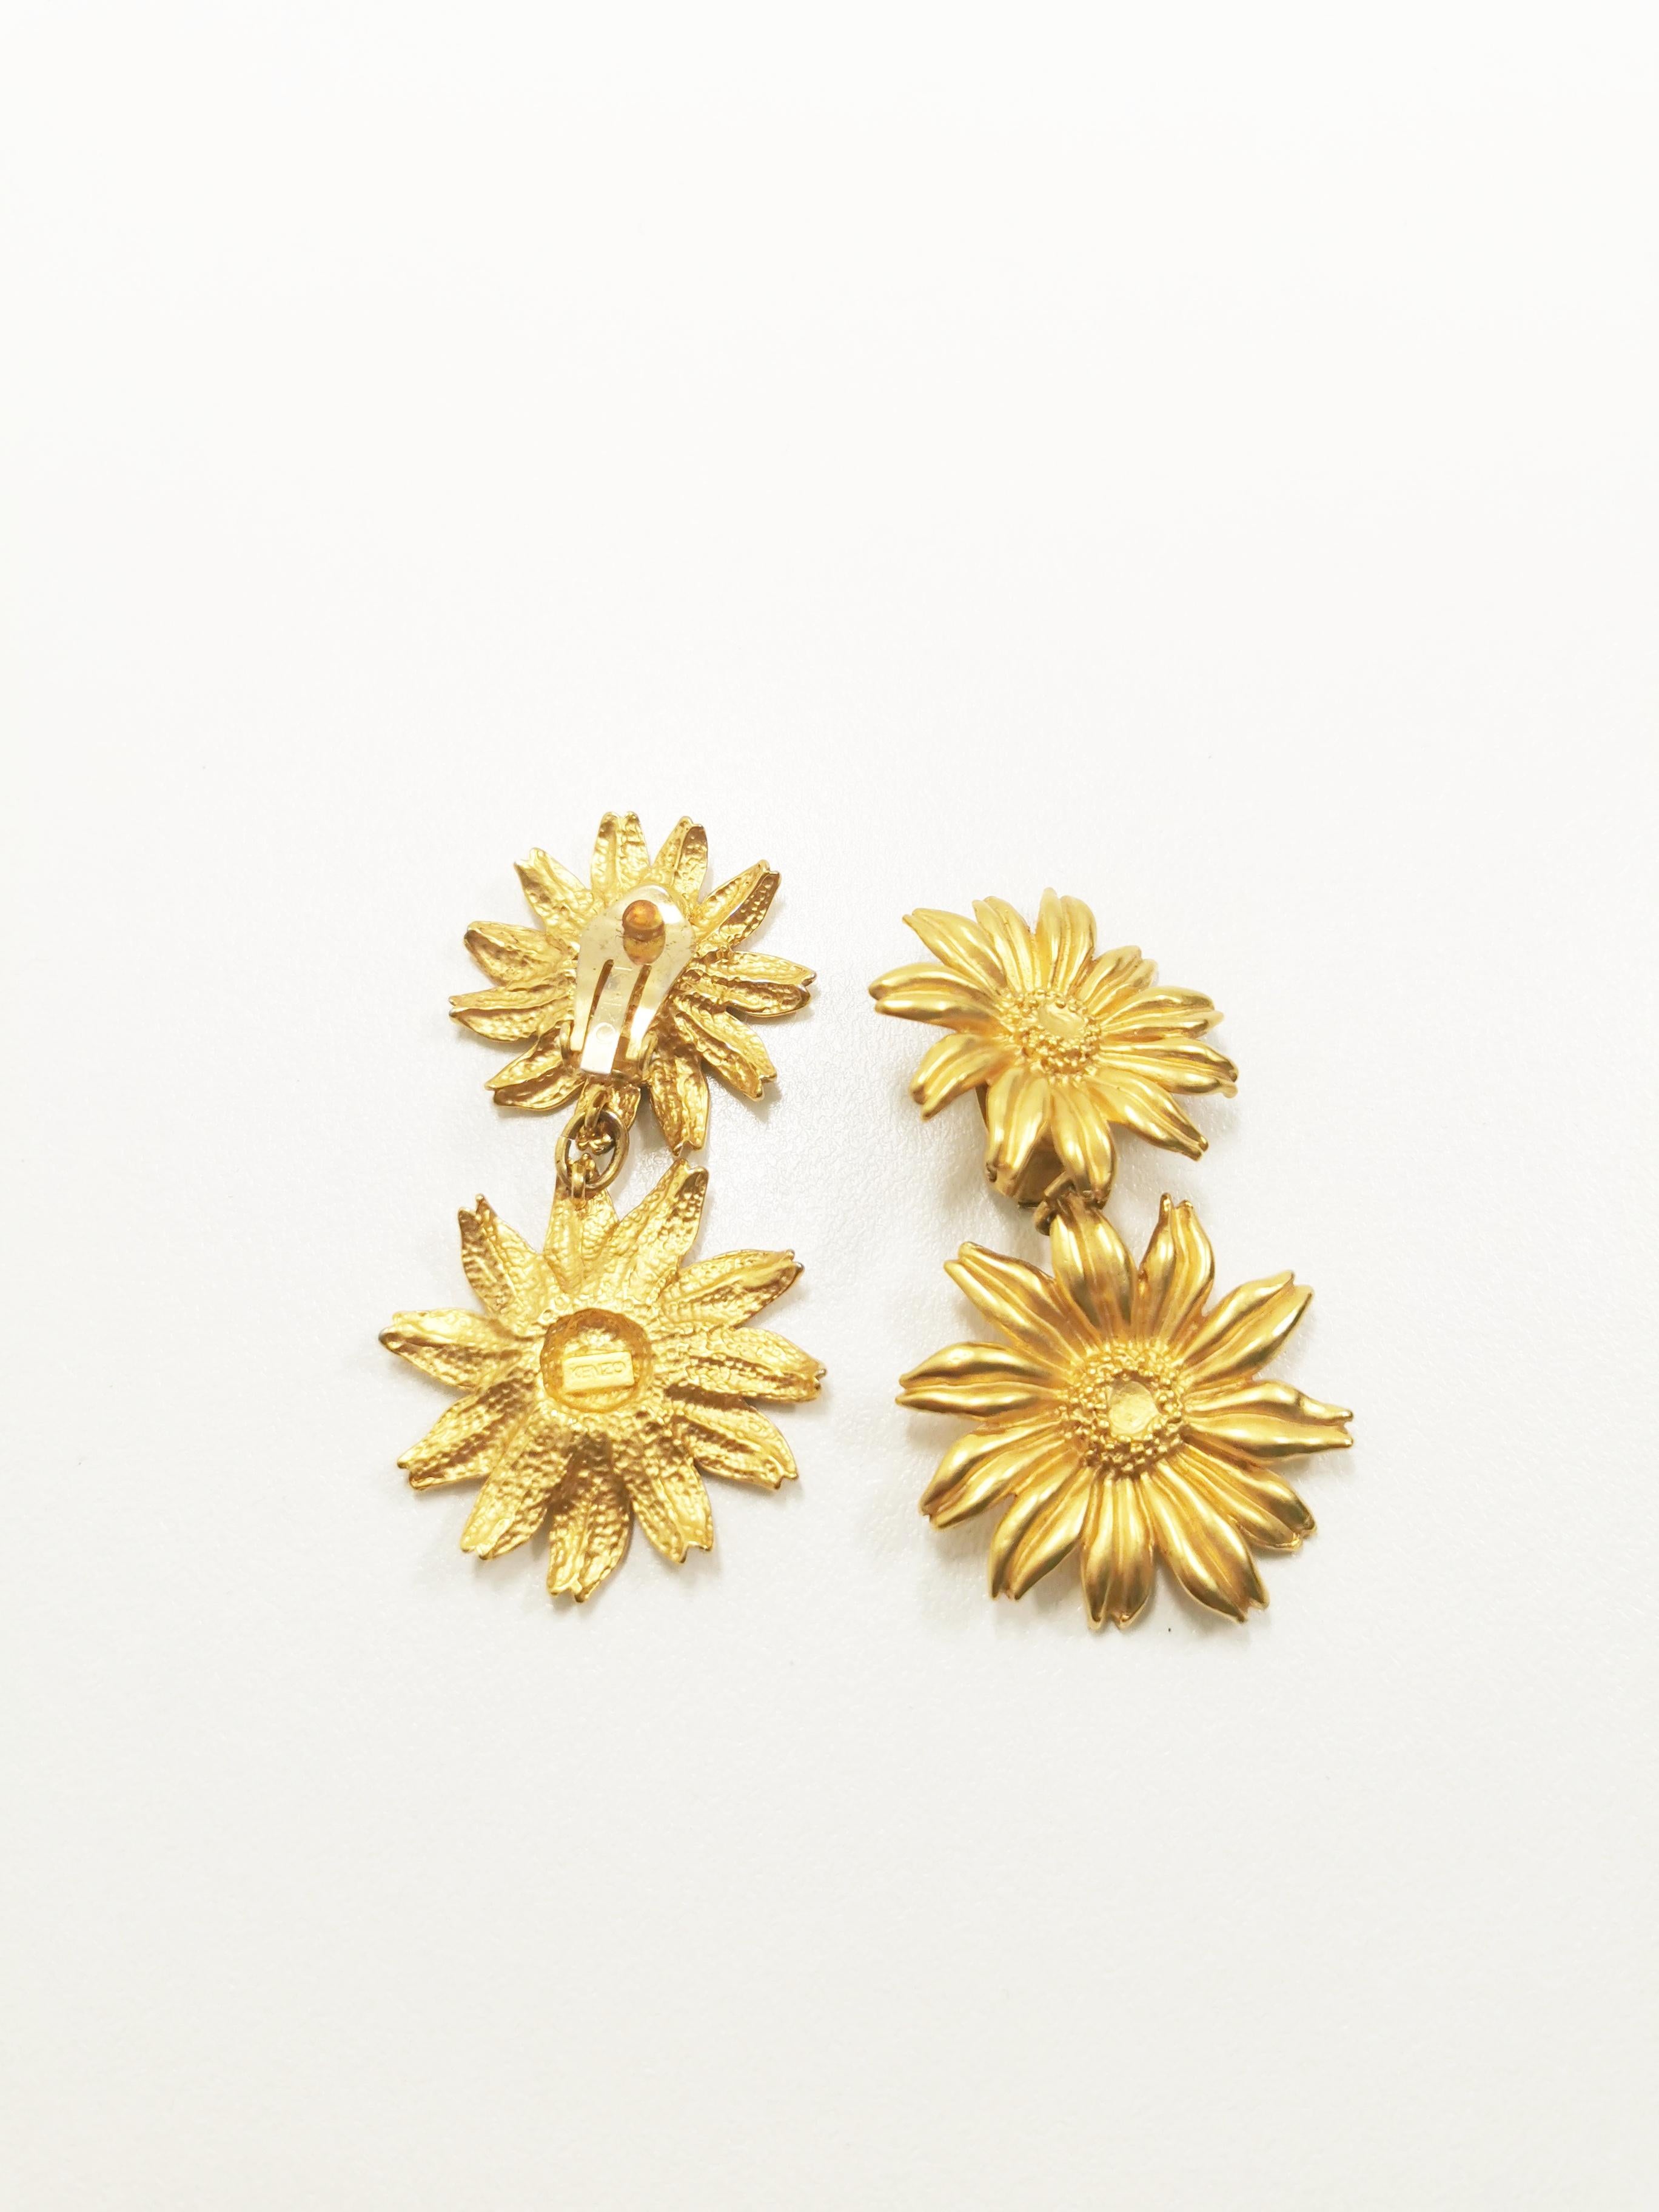 Sie sind der Inbegriff von zeitloser Eleganz und böhmischem Charme: die vergoldeten Vintage KENZO Gerbera Flower Dangle Clip-On Earrings. Mit viel Liebe zum Detail gefertigt, fangen diese exquisiten Ohrringe die Essenz einer vergangenen Ära ein und